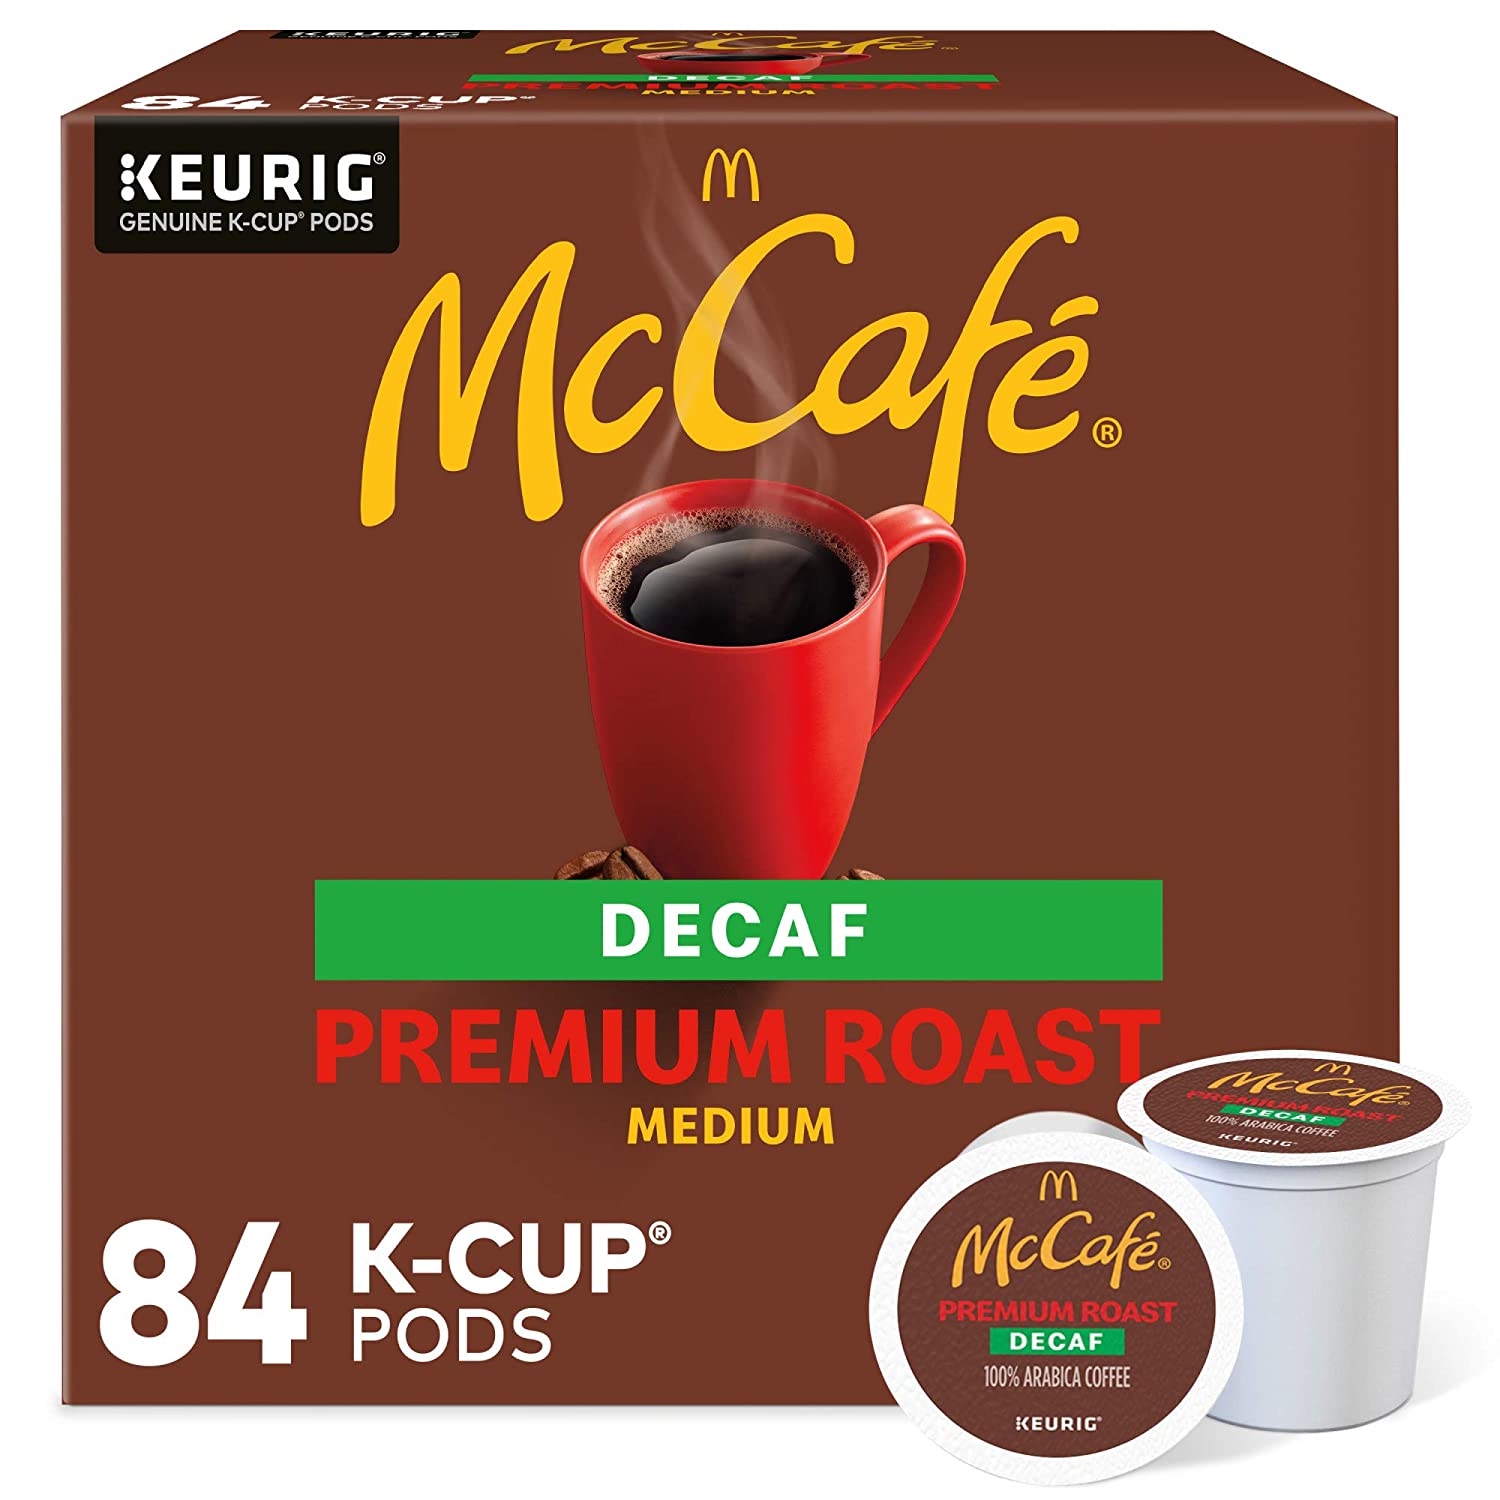 McCafe Premium Roast Decaf